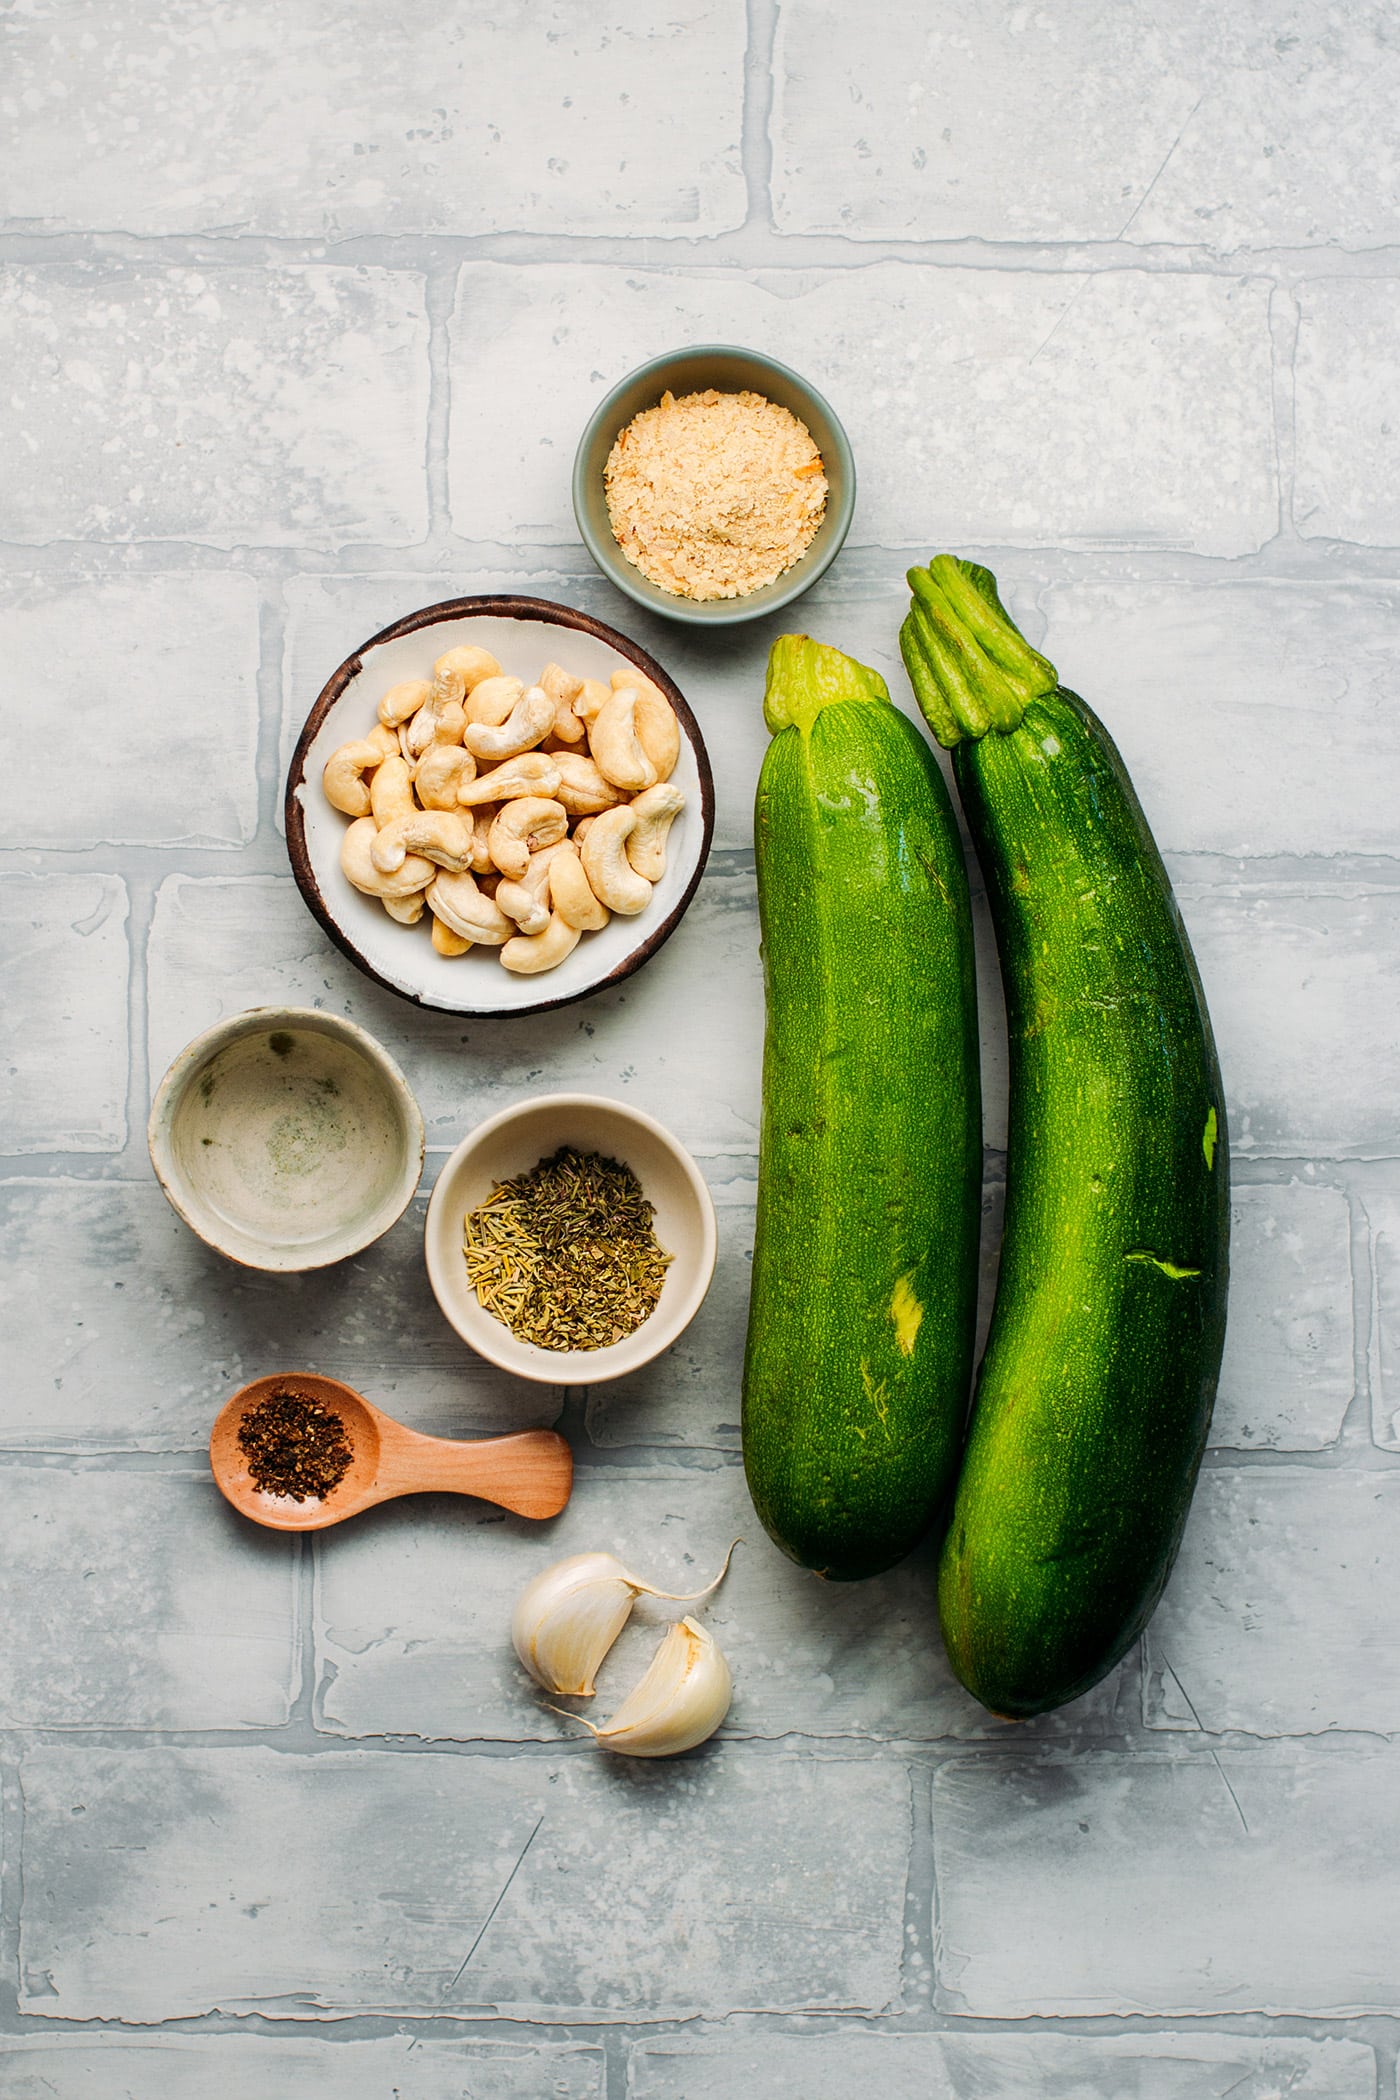 Ingredients to make a Vegan Savory Zucchini Tart.